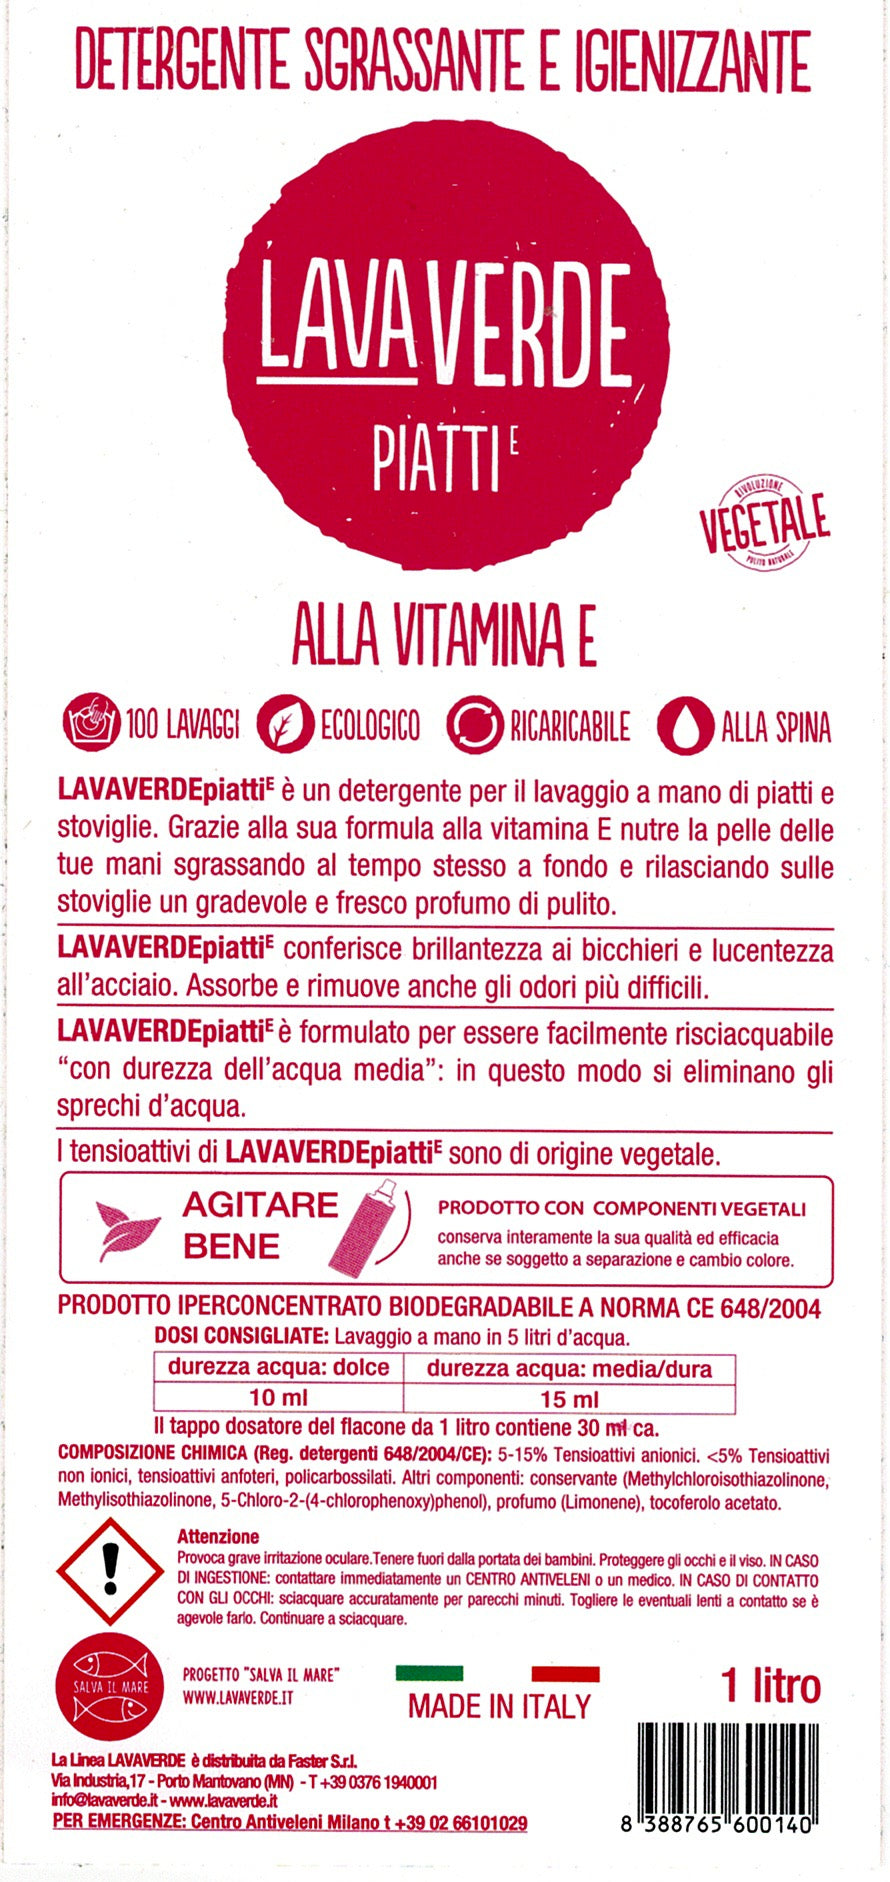 Detergente Piatti alla vitamina E Lavaverde - Vettovaglia.com